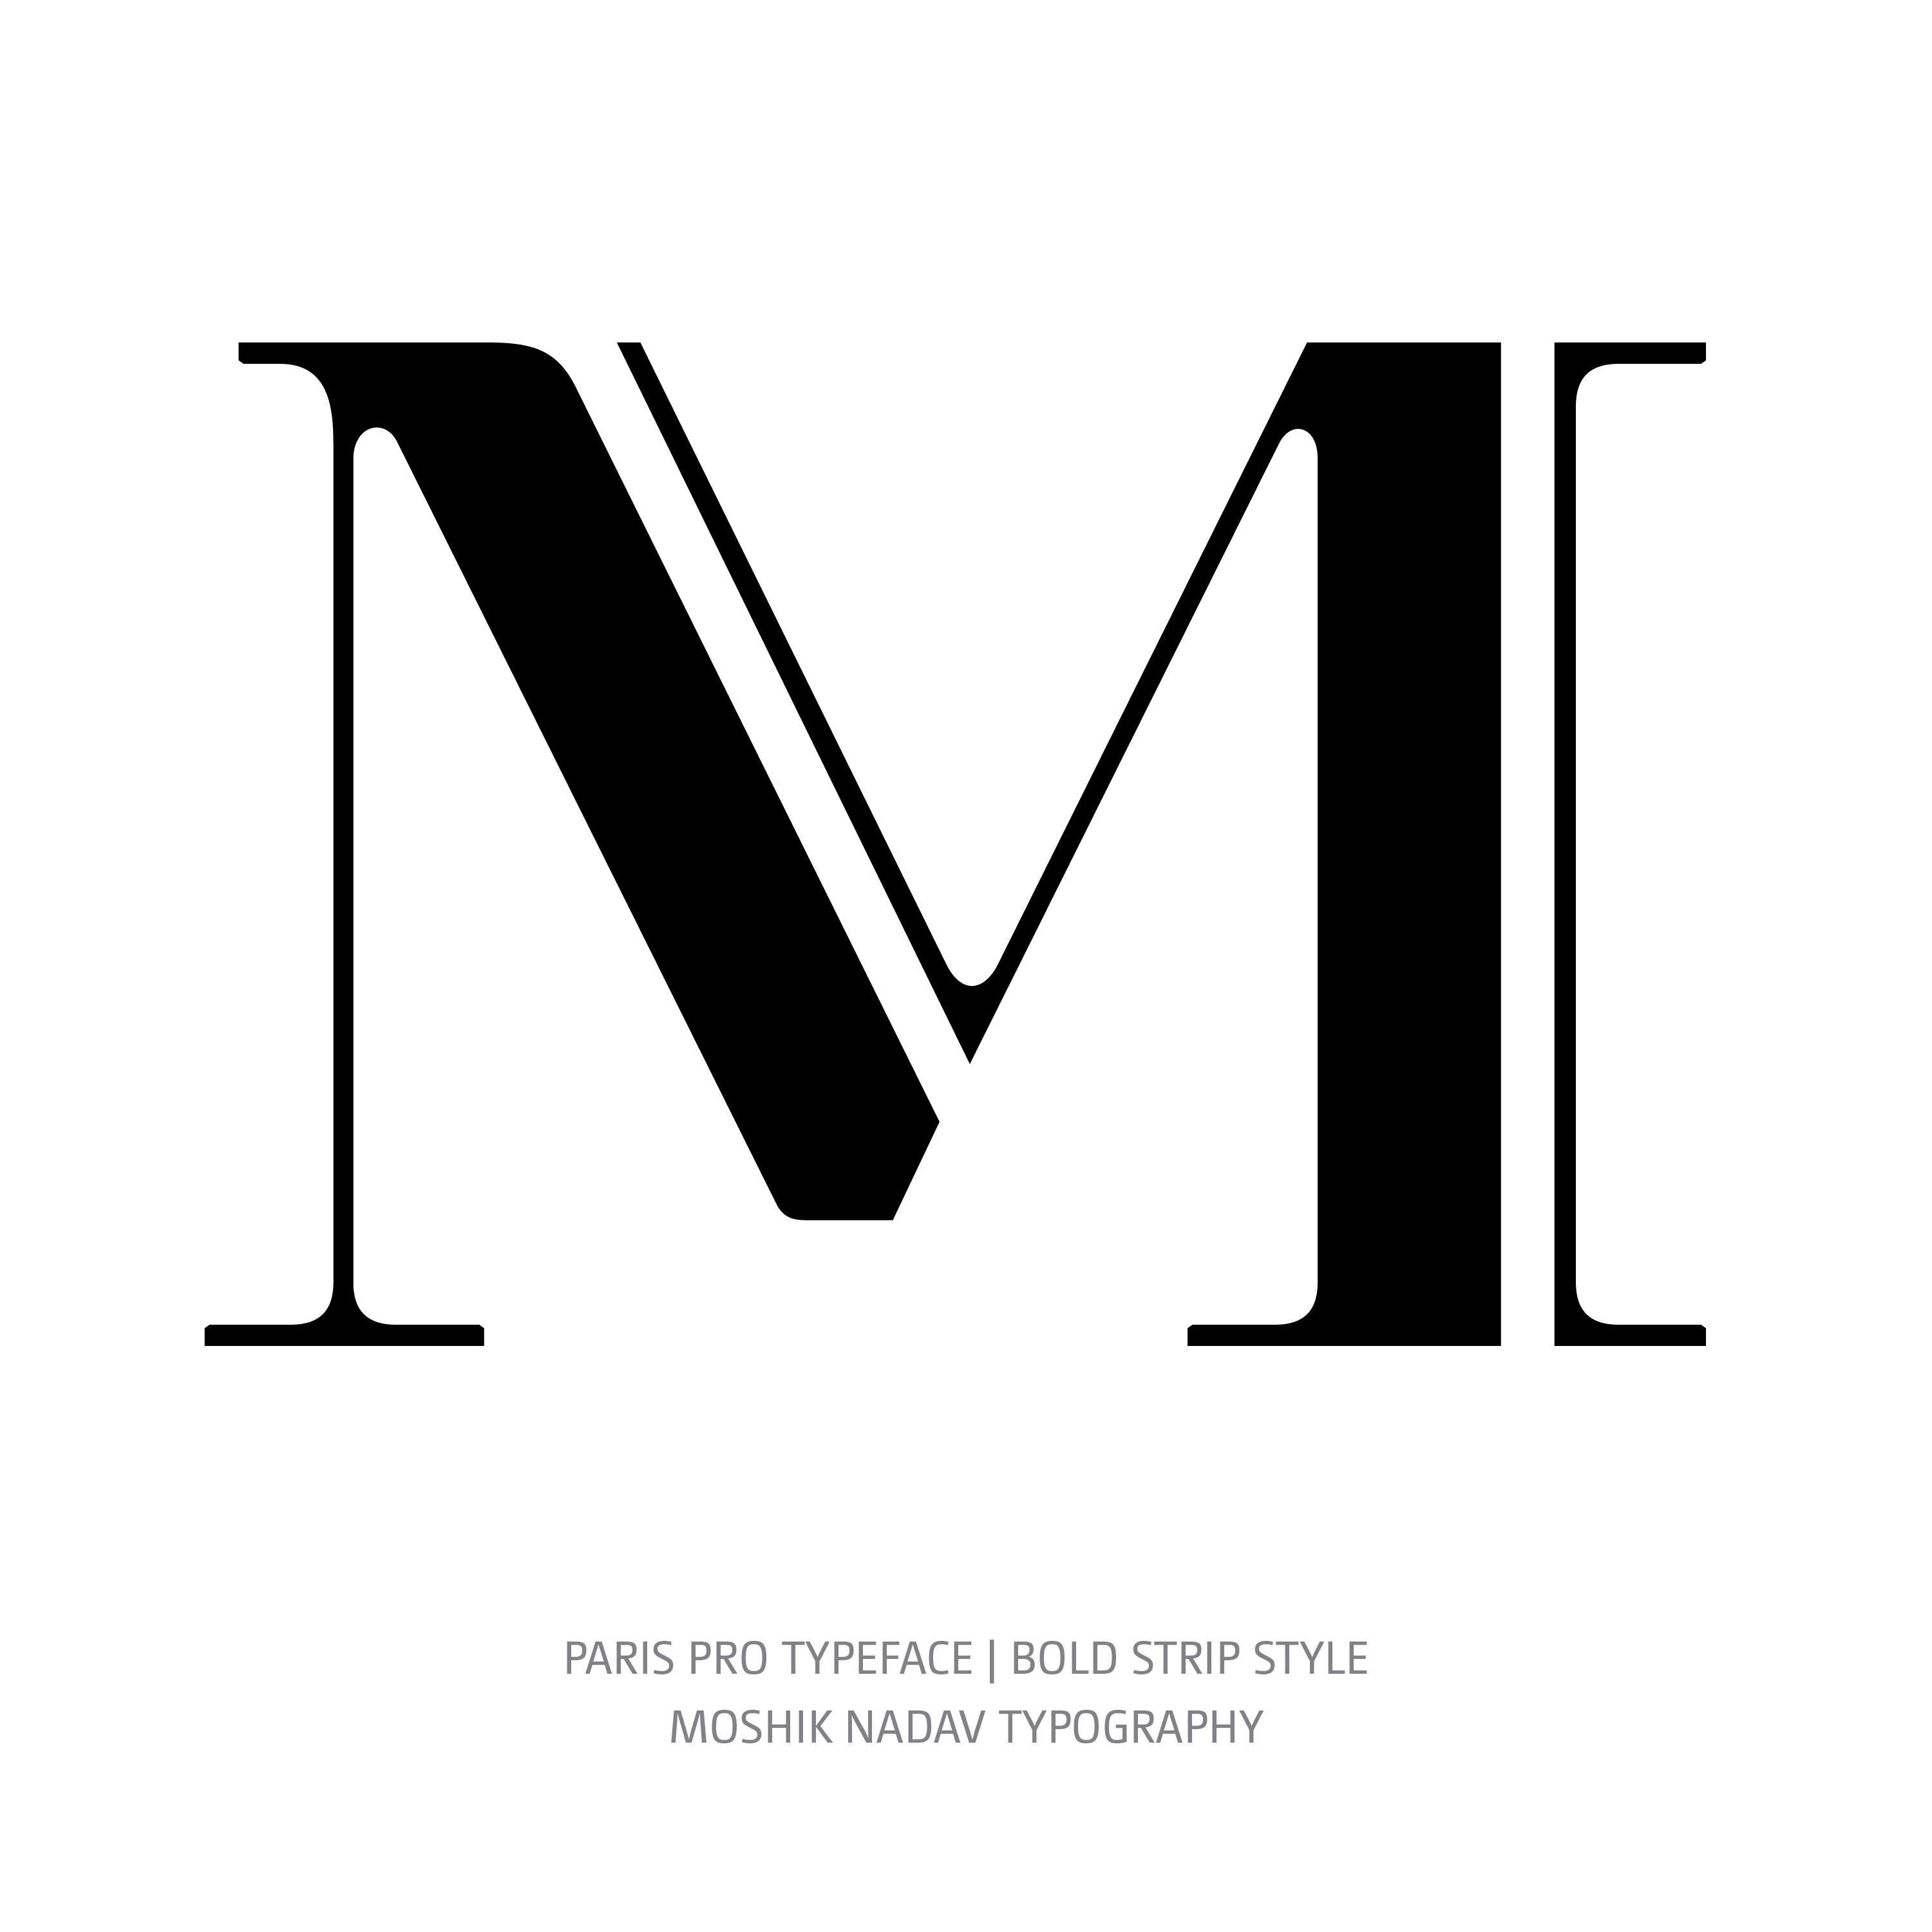 Paris Pro Typeface Bold Strip M